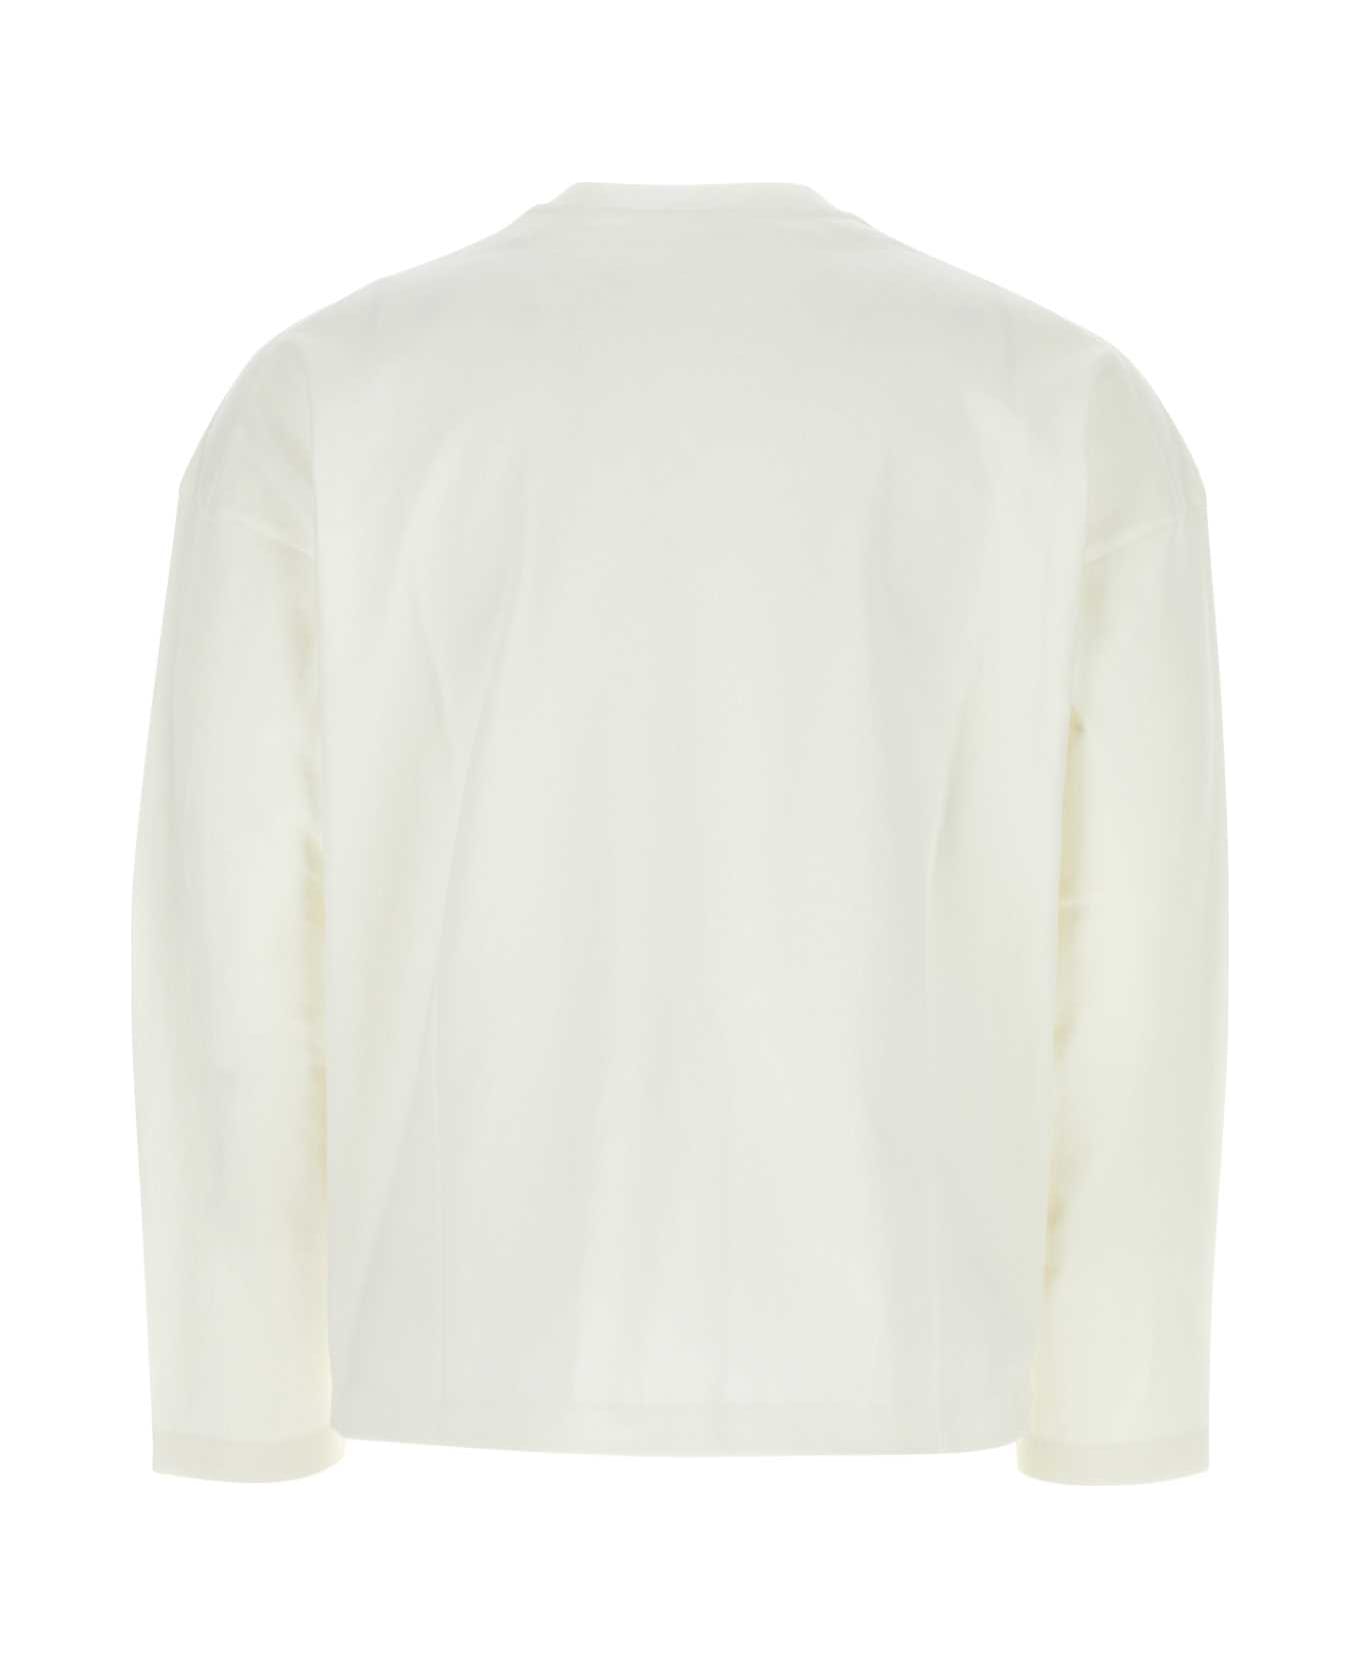 Jil Sander White Cotton T-shirt - 102